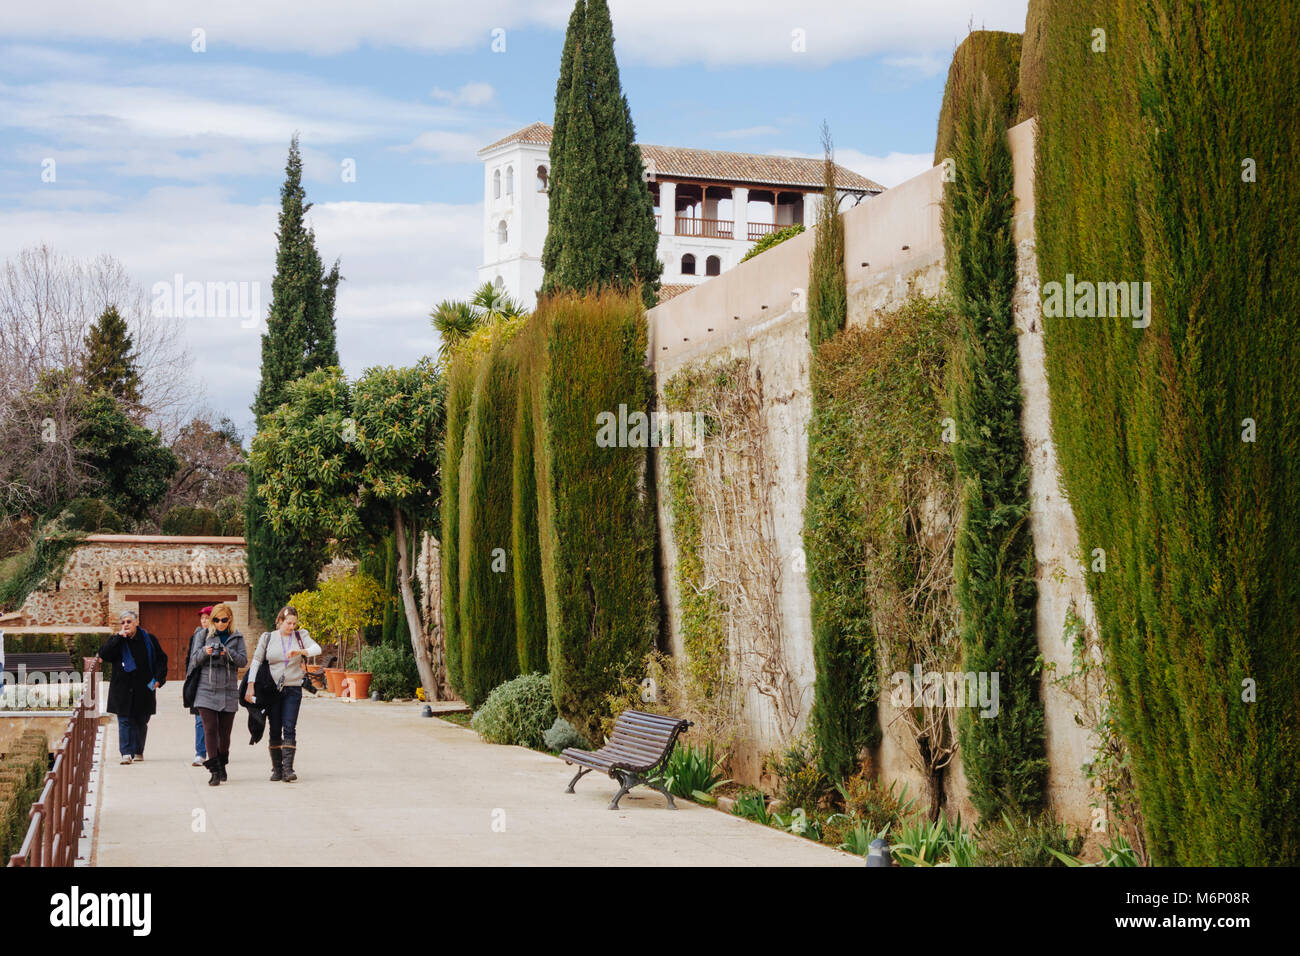 Granada, Andalusien, Spanien: Touristen Spaziergang in den Gärten des Generalife Palast innerhalb der Alhambra und Generalife. Stockfoto